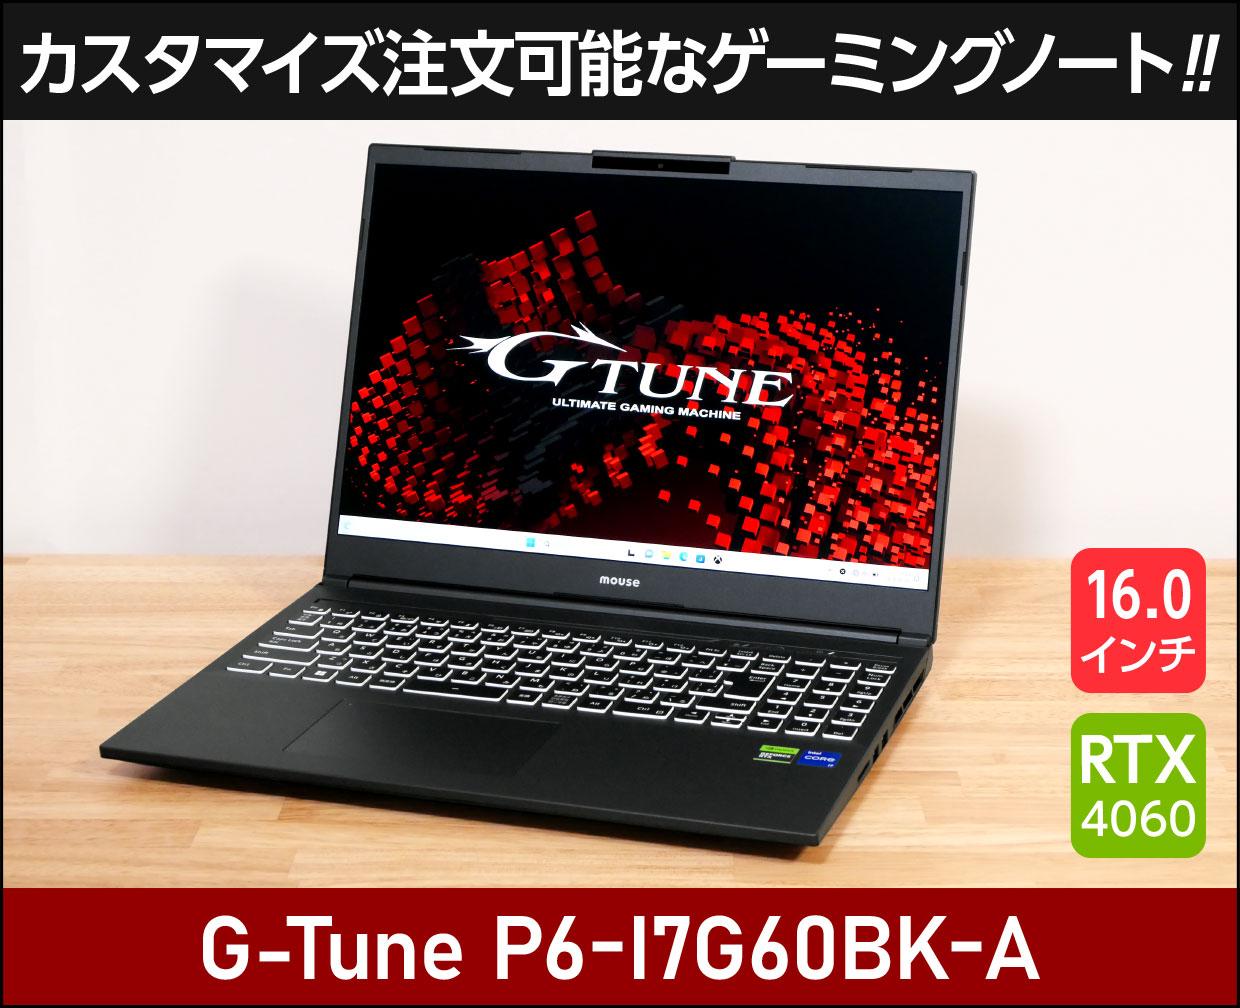 マウスコンピューター G-Tune P6-I7G60BK-Aのメイン画像